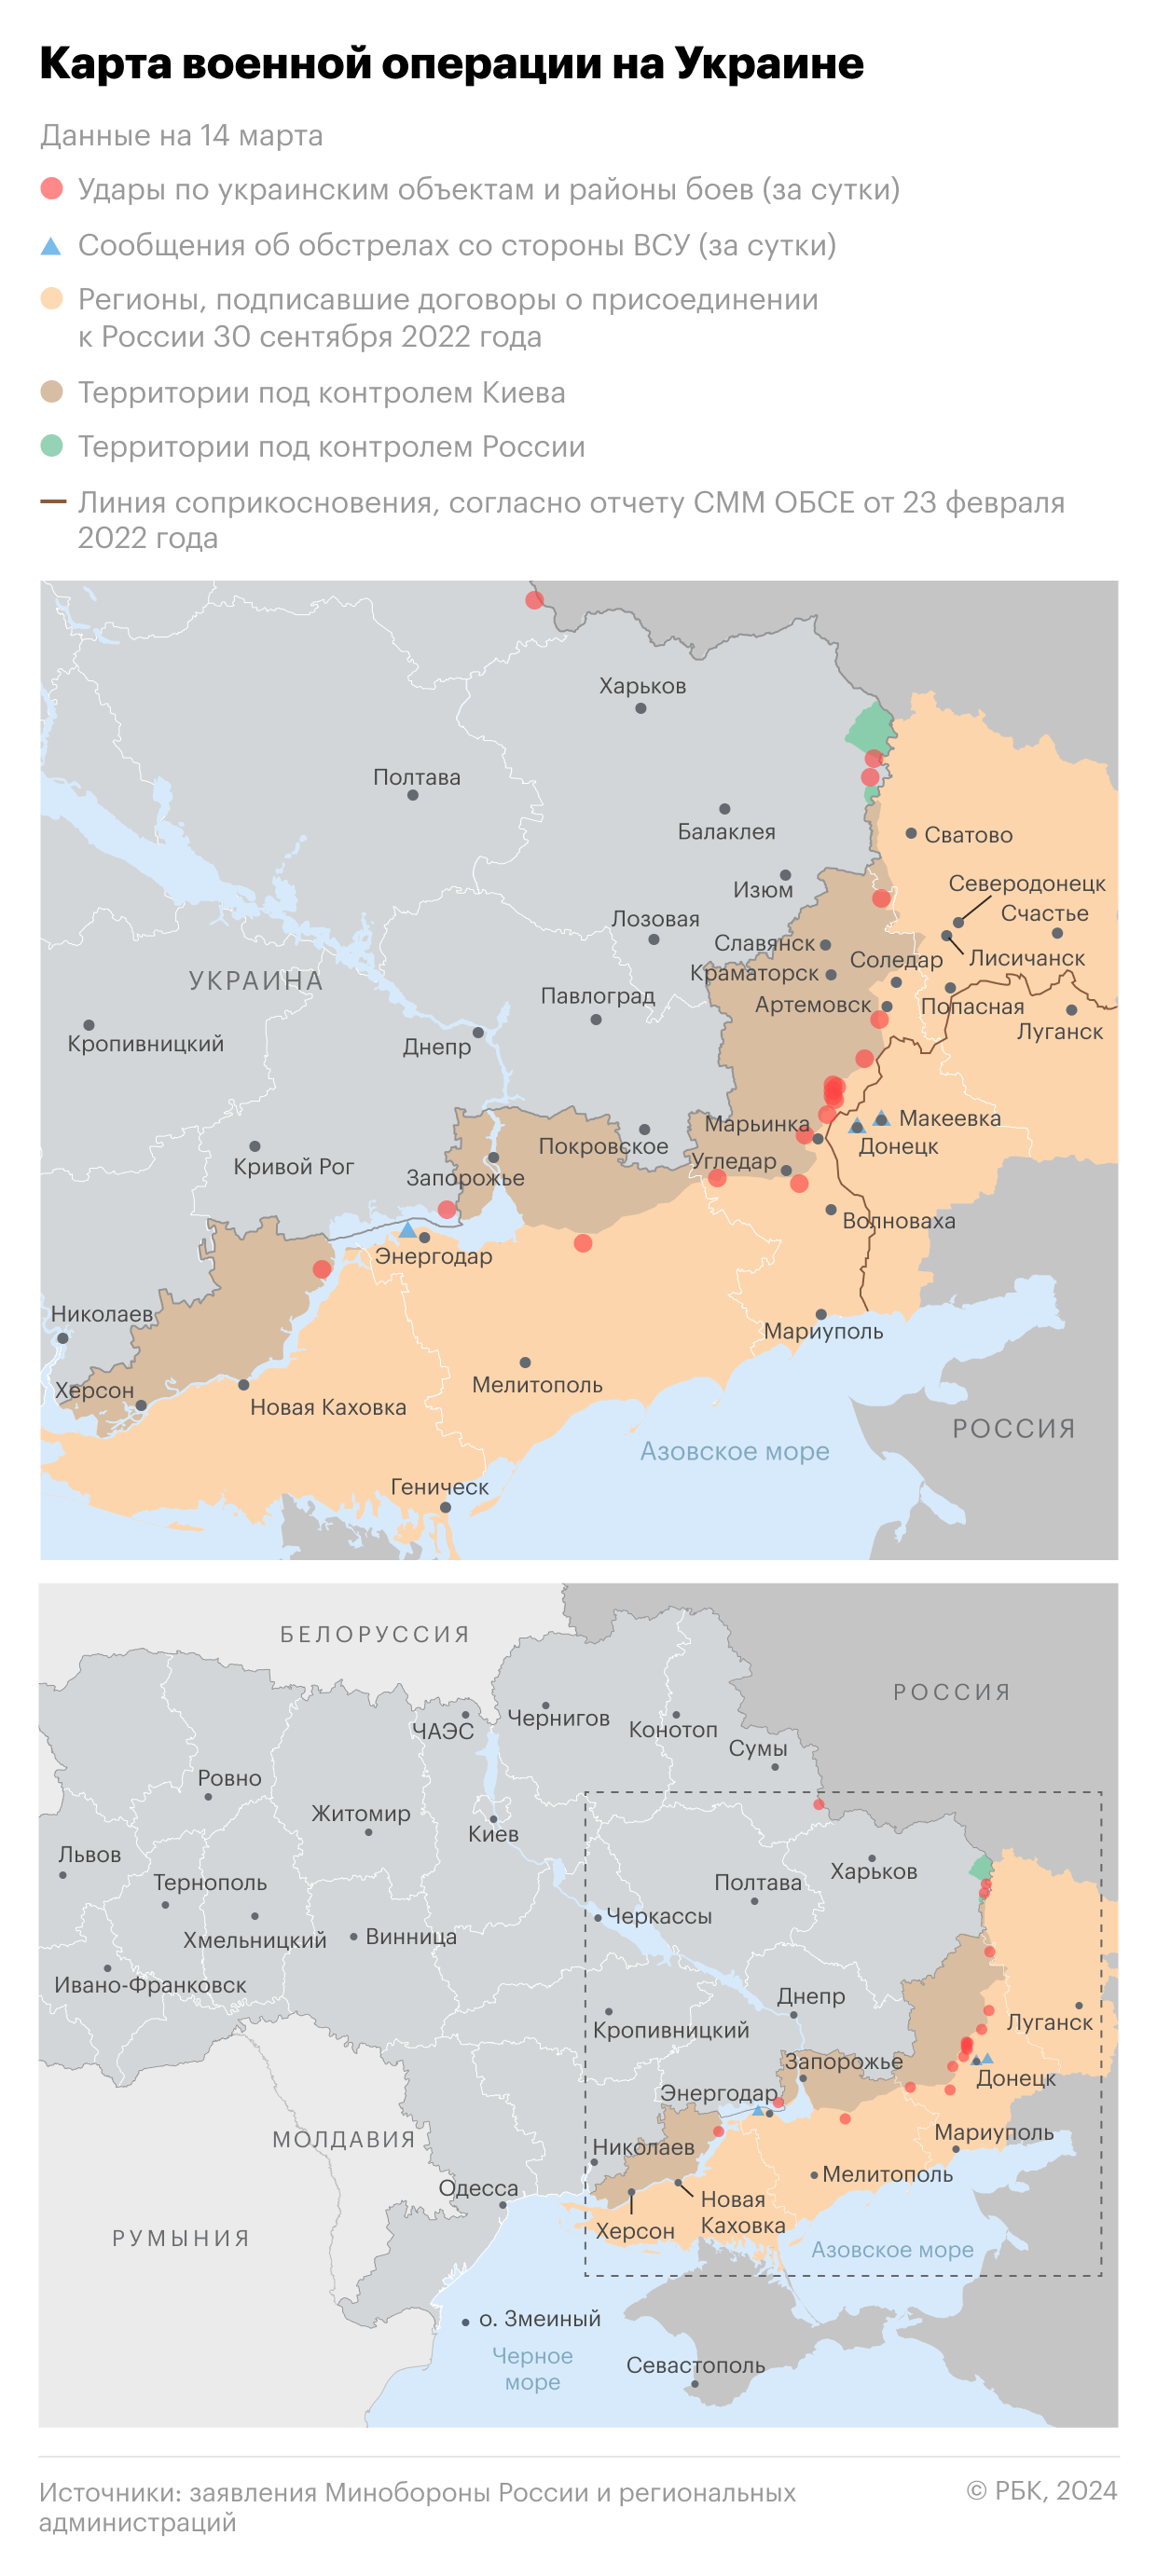 Военная операция на Украине. Карта на 14 марта